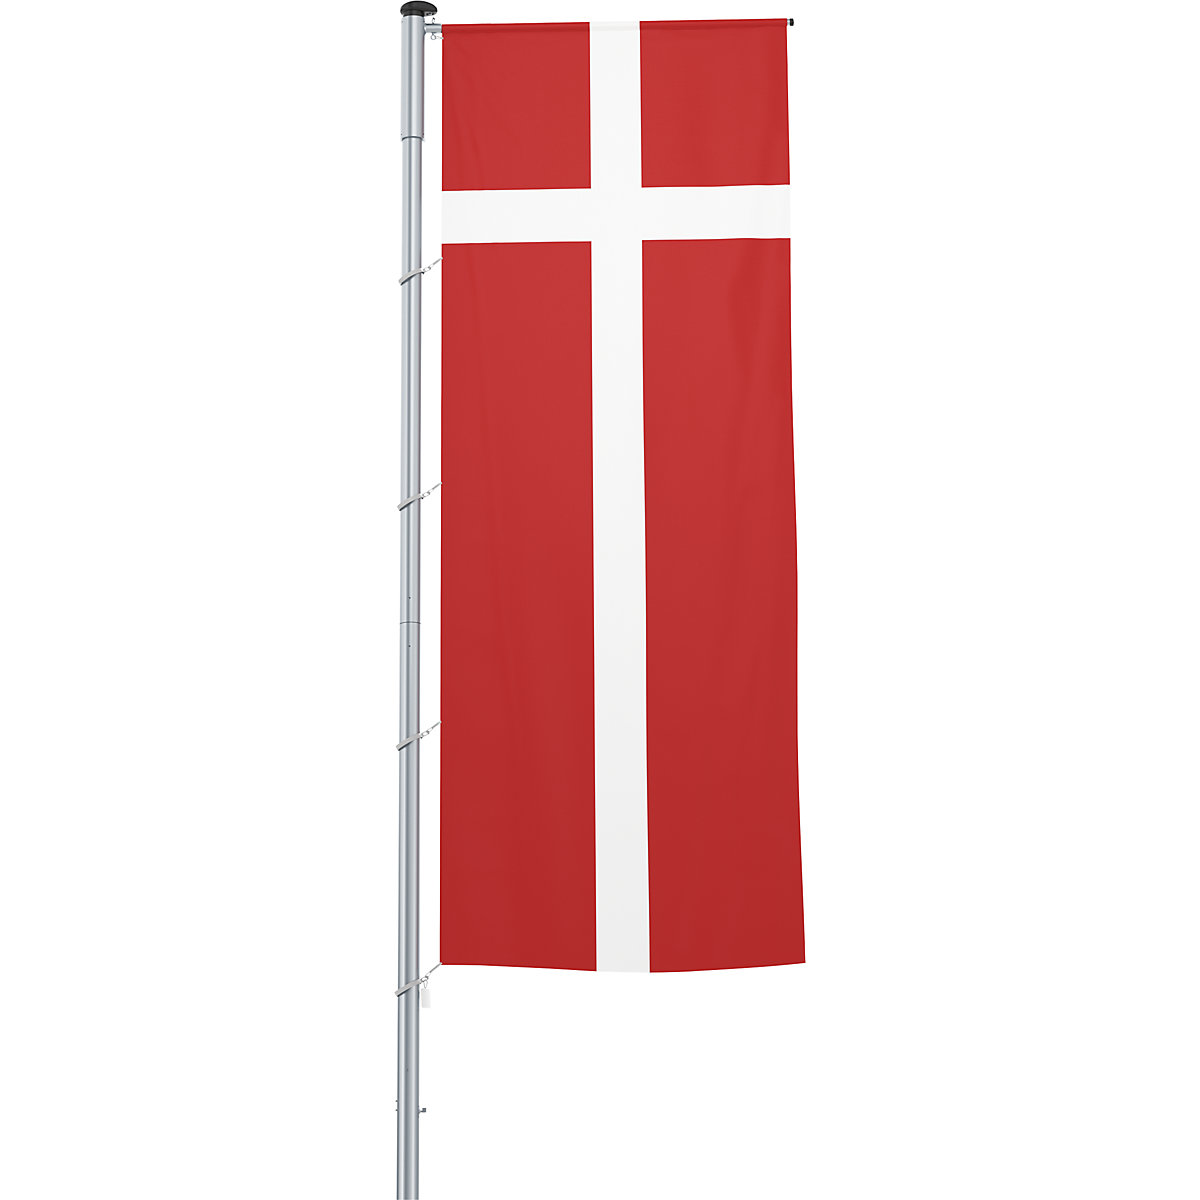 Gémes zászló/országzászló – Mannus, méret 1,2 x 3 m, Dánia-3